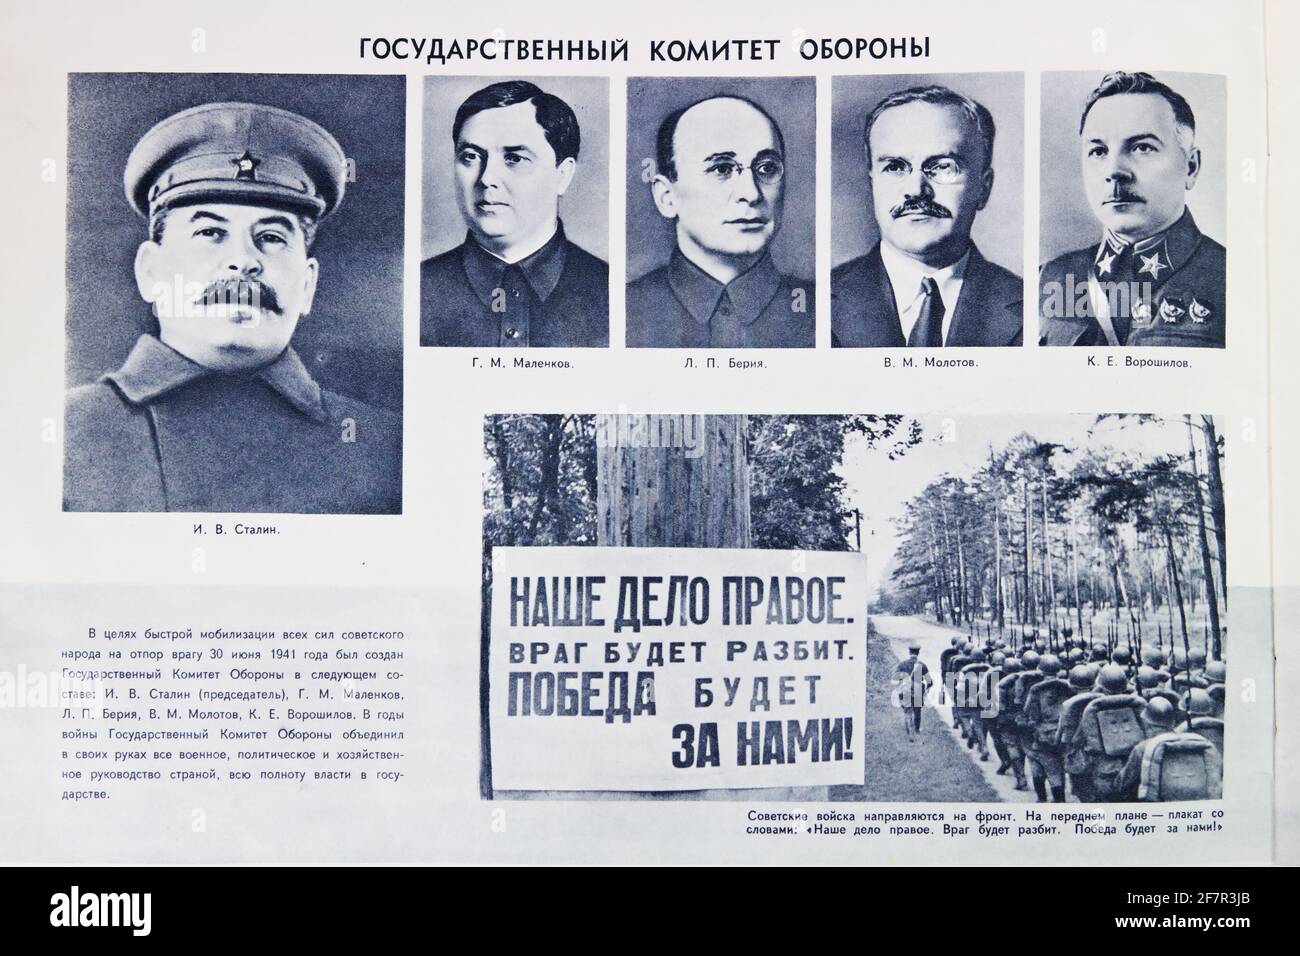 Staatliches Verteidigungskomitee der UdSSR in den Jahren 2. Weltkrieg: Stalin, Malenkow, Molotow, Woroschilow, Berija, UdSSR, 1940er Jahre Stockfoto